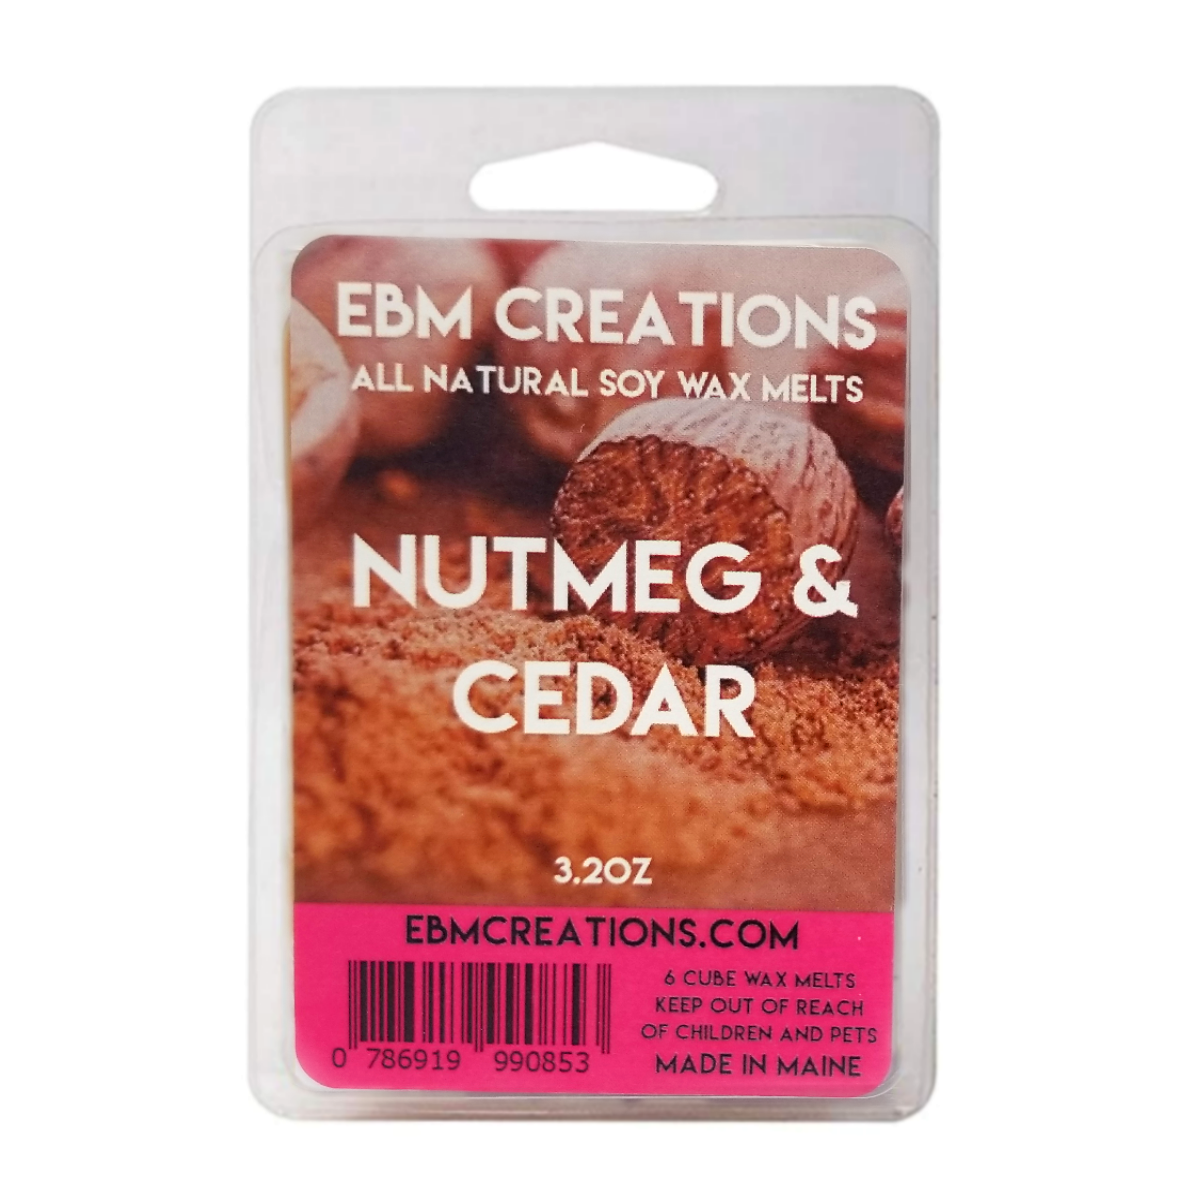 Nutmeg & Cedar - 3.2 oz Clamshell